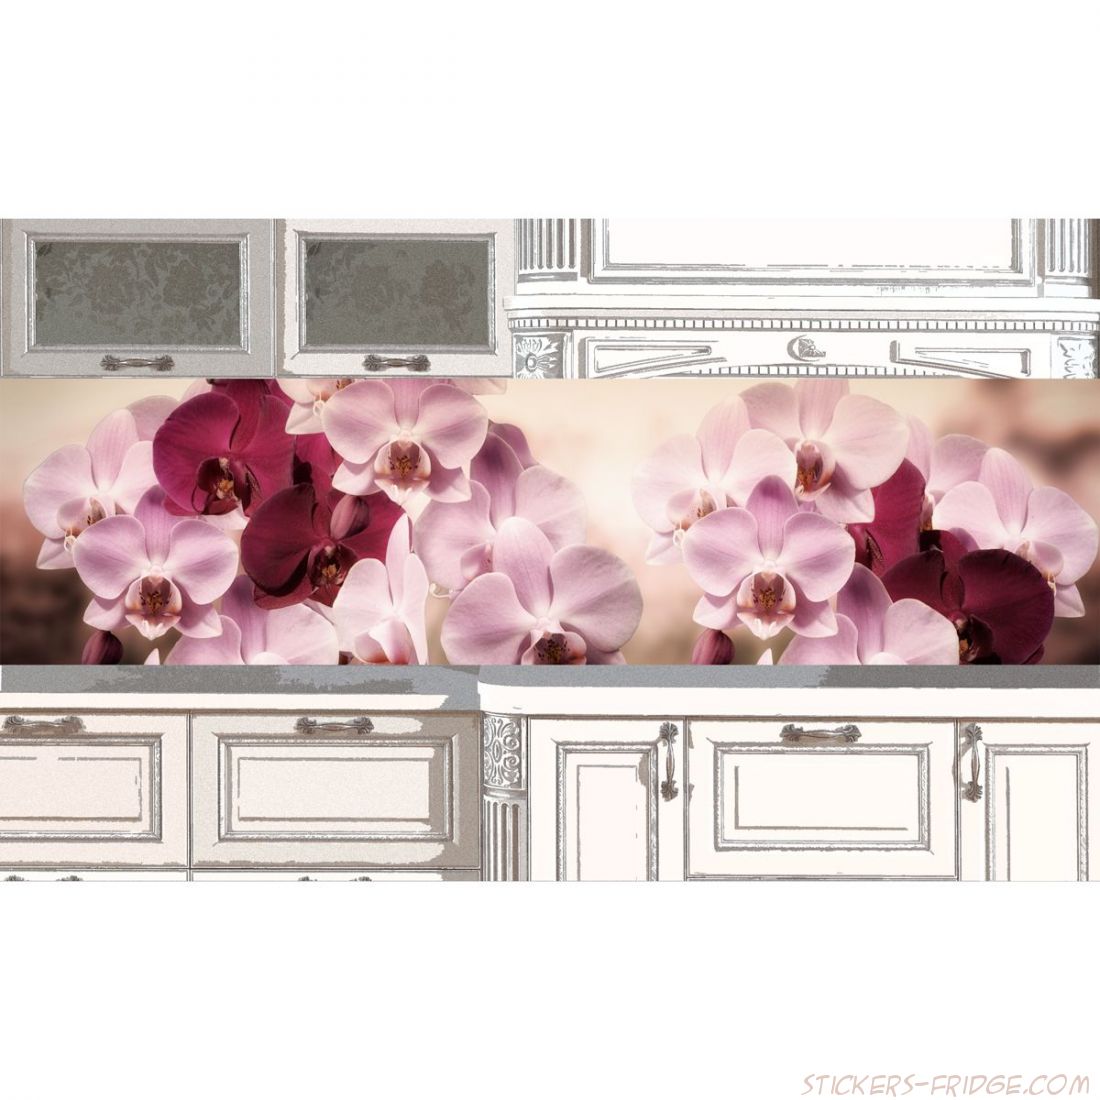 Наклейка на фартук кухни - Картинка с орхидеями